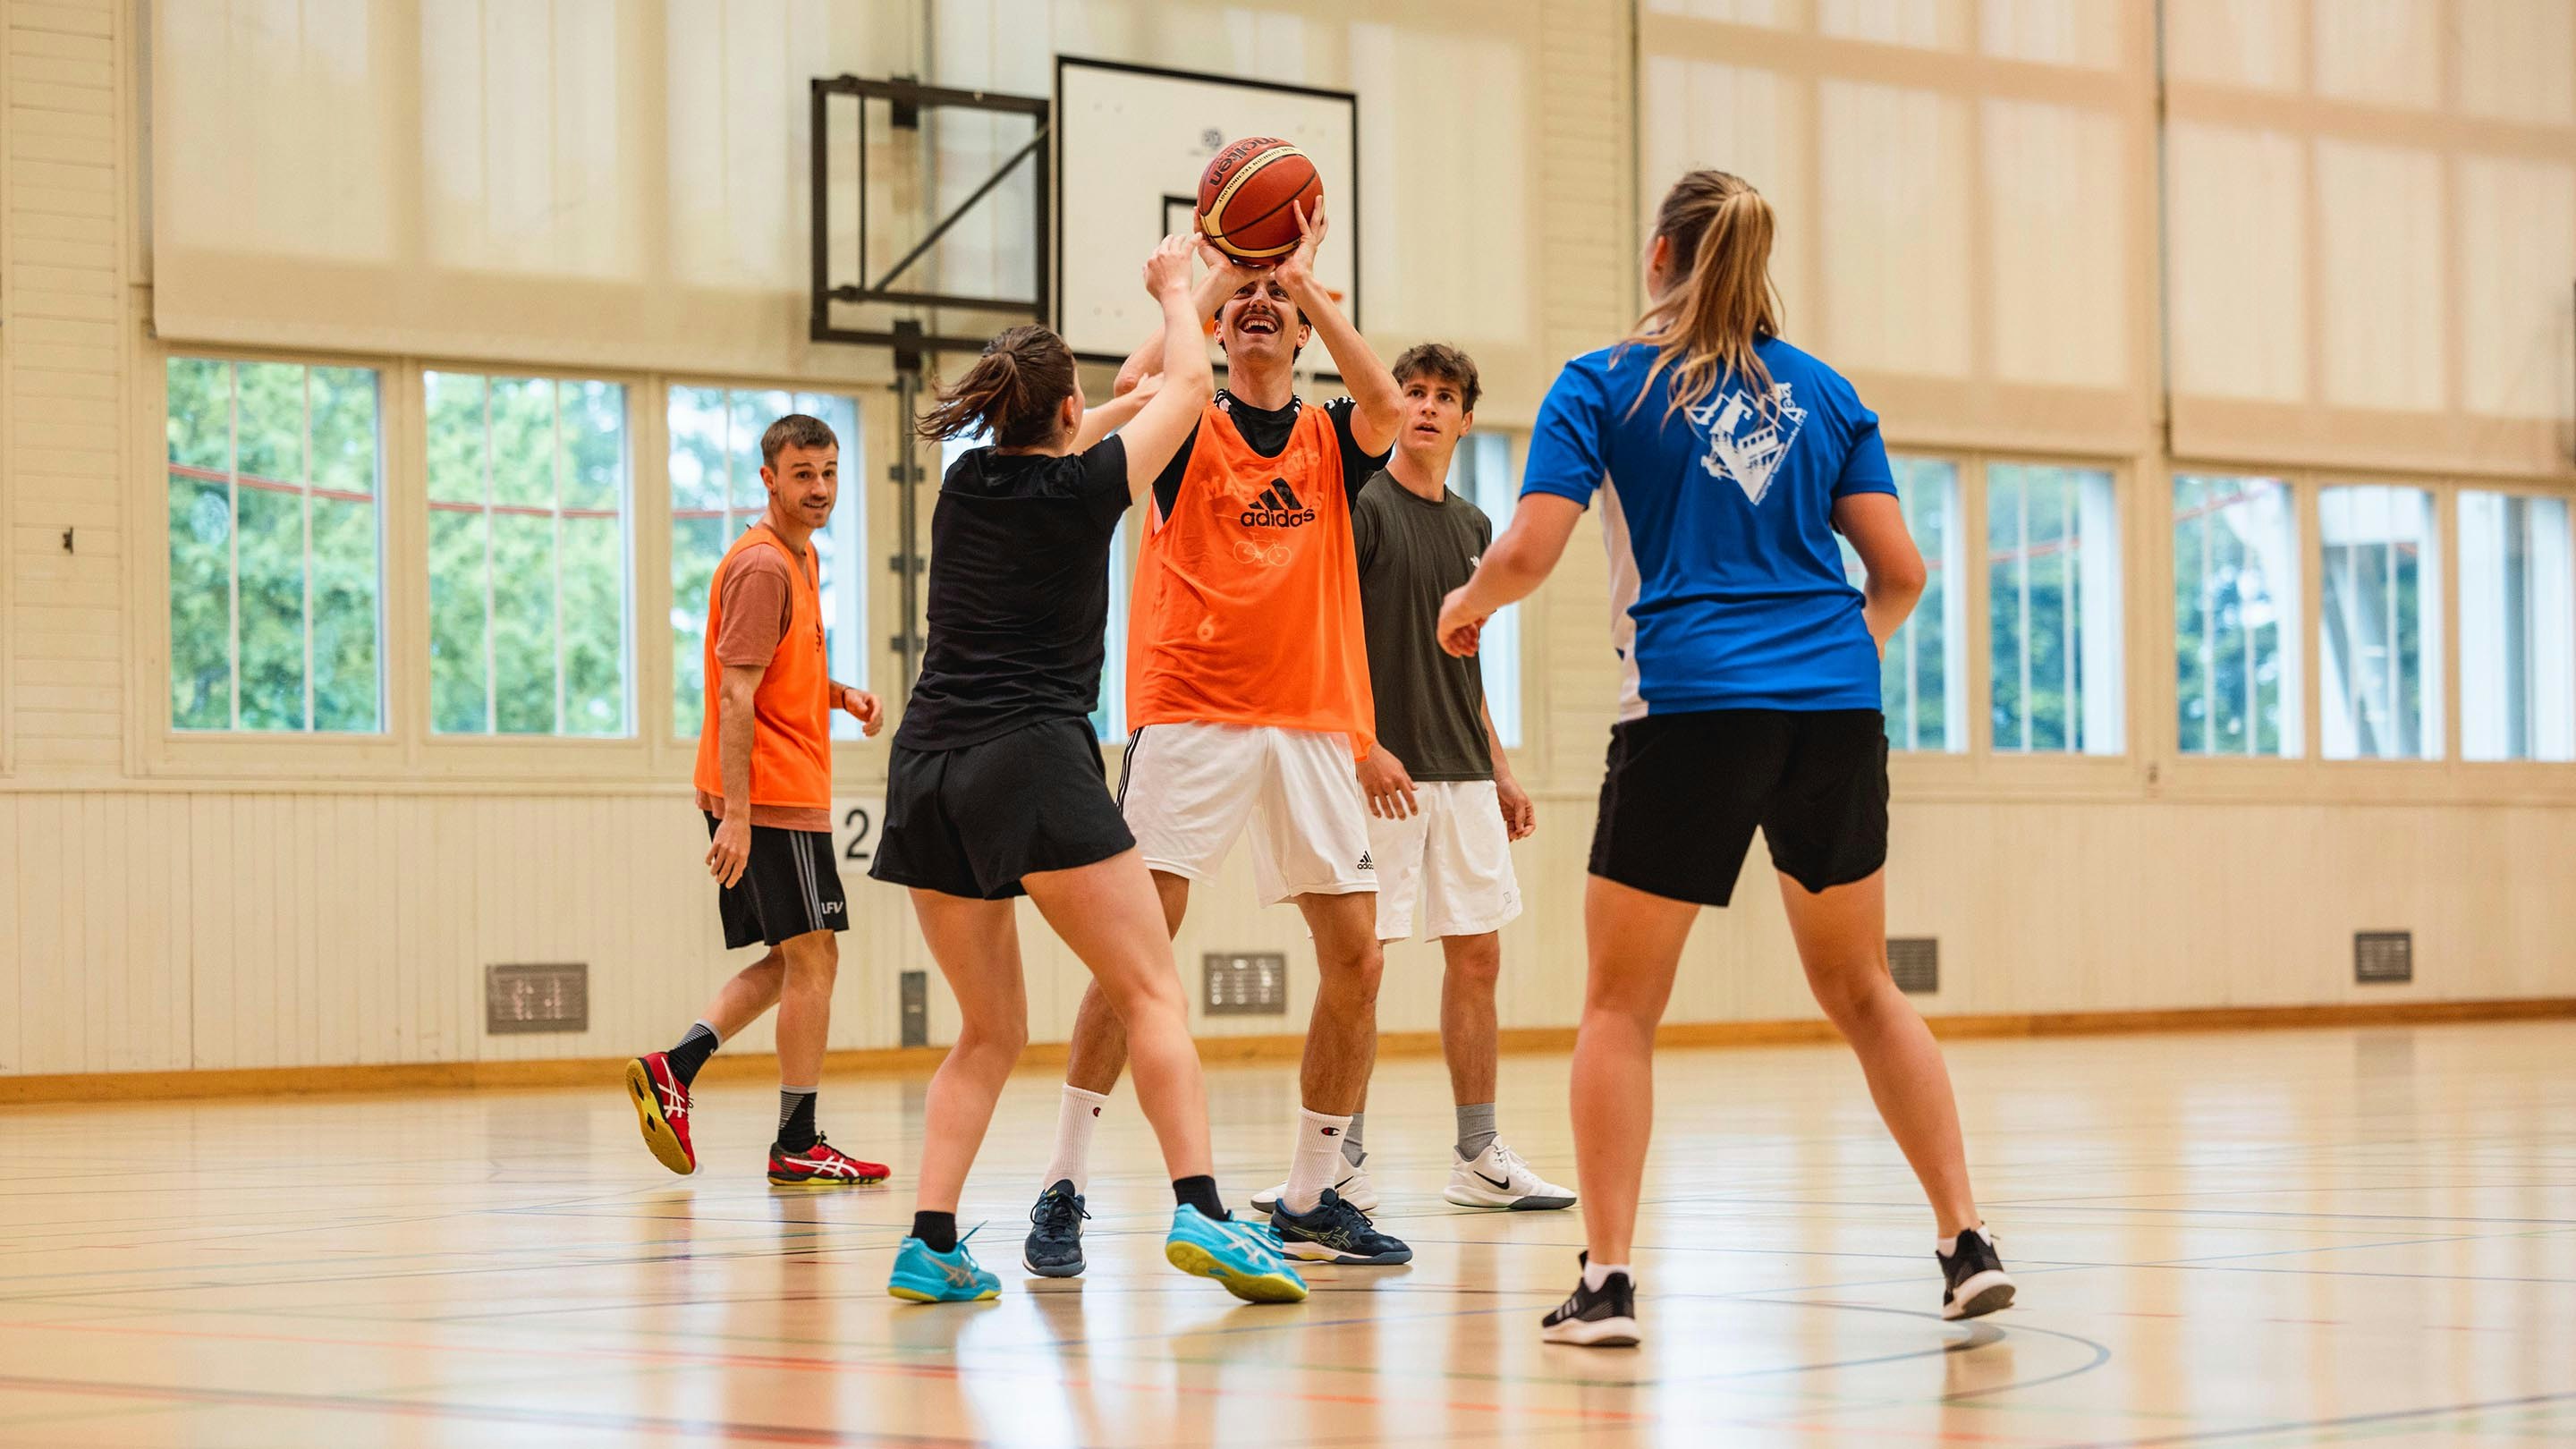 Studenten der EHSM während eines Basketballkurses. Foto: BASPO / Charlène Mamie